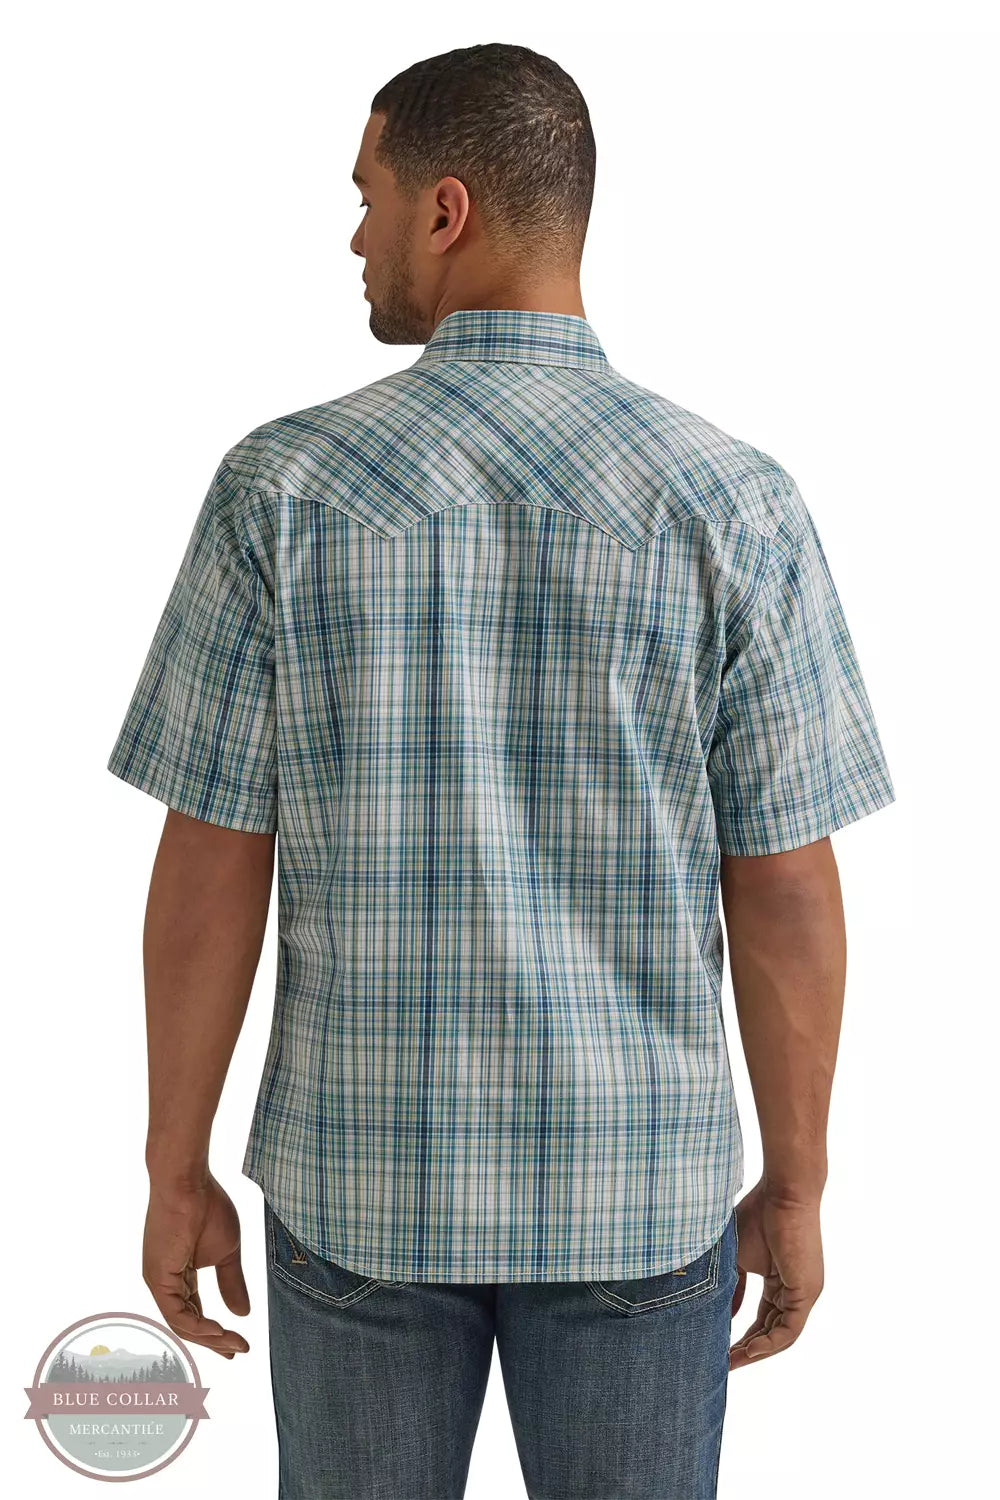 Wrangler 112344300 Retro Snap Shirt with Sawtooth Pockets in Aqua Plaid Back View